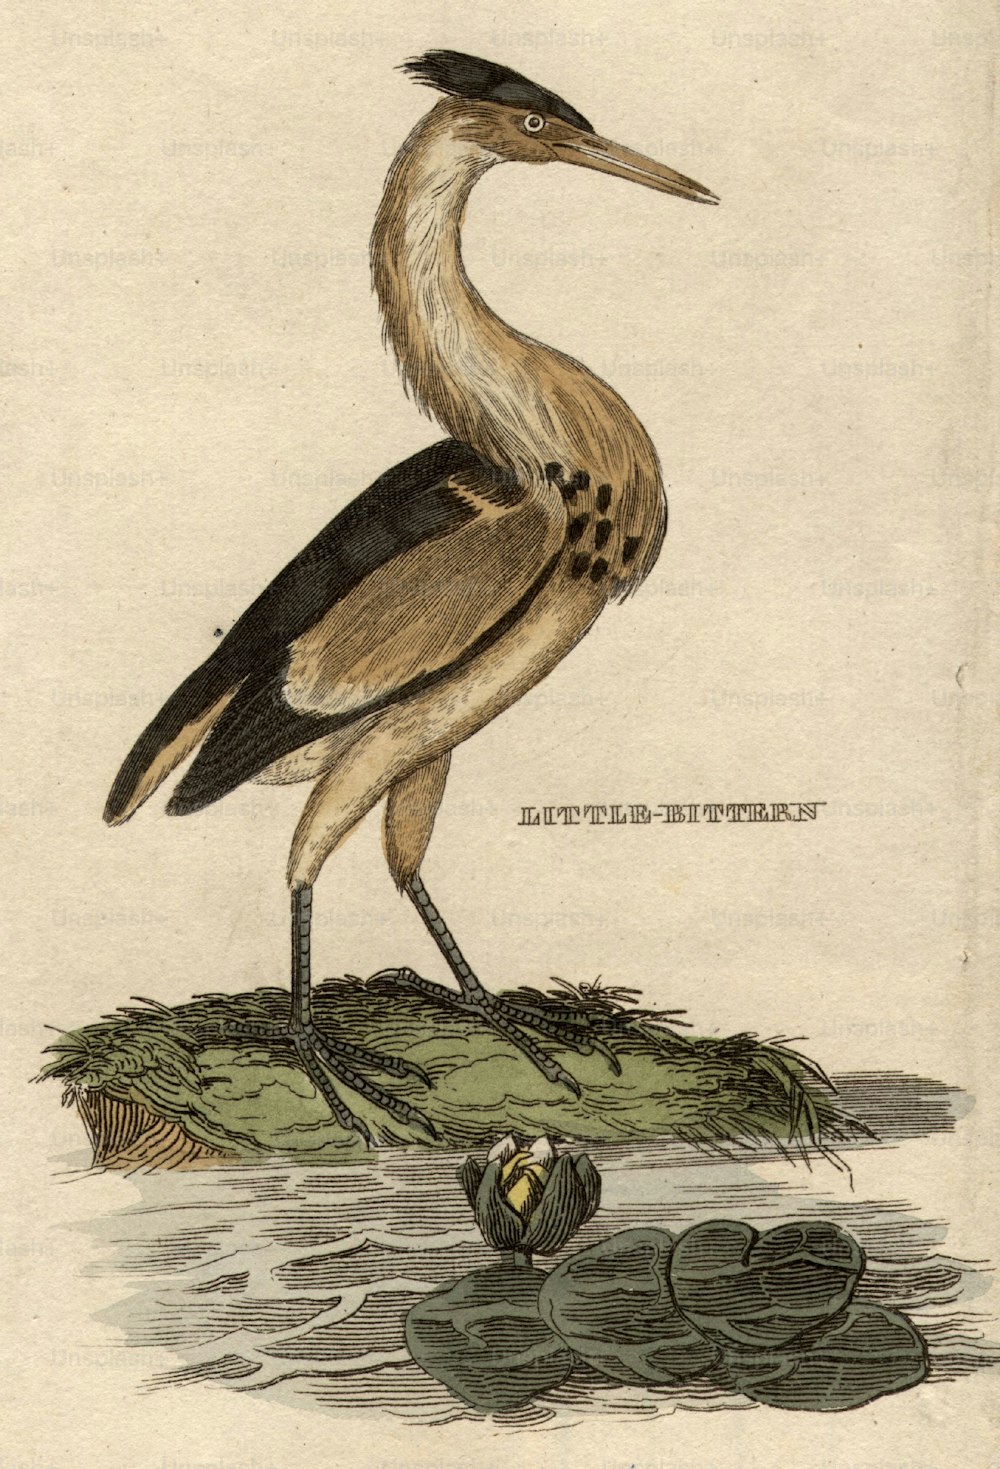 1800年頃:アオサギ科の湿地の鳥、リトルビターン。 (写真提供:Hulton Archive/Getty Images)